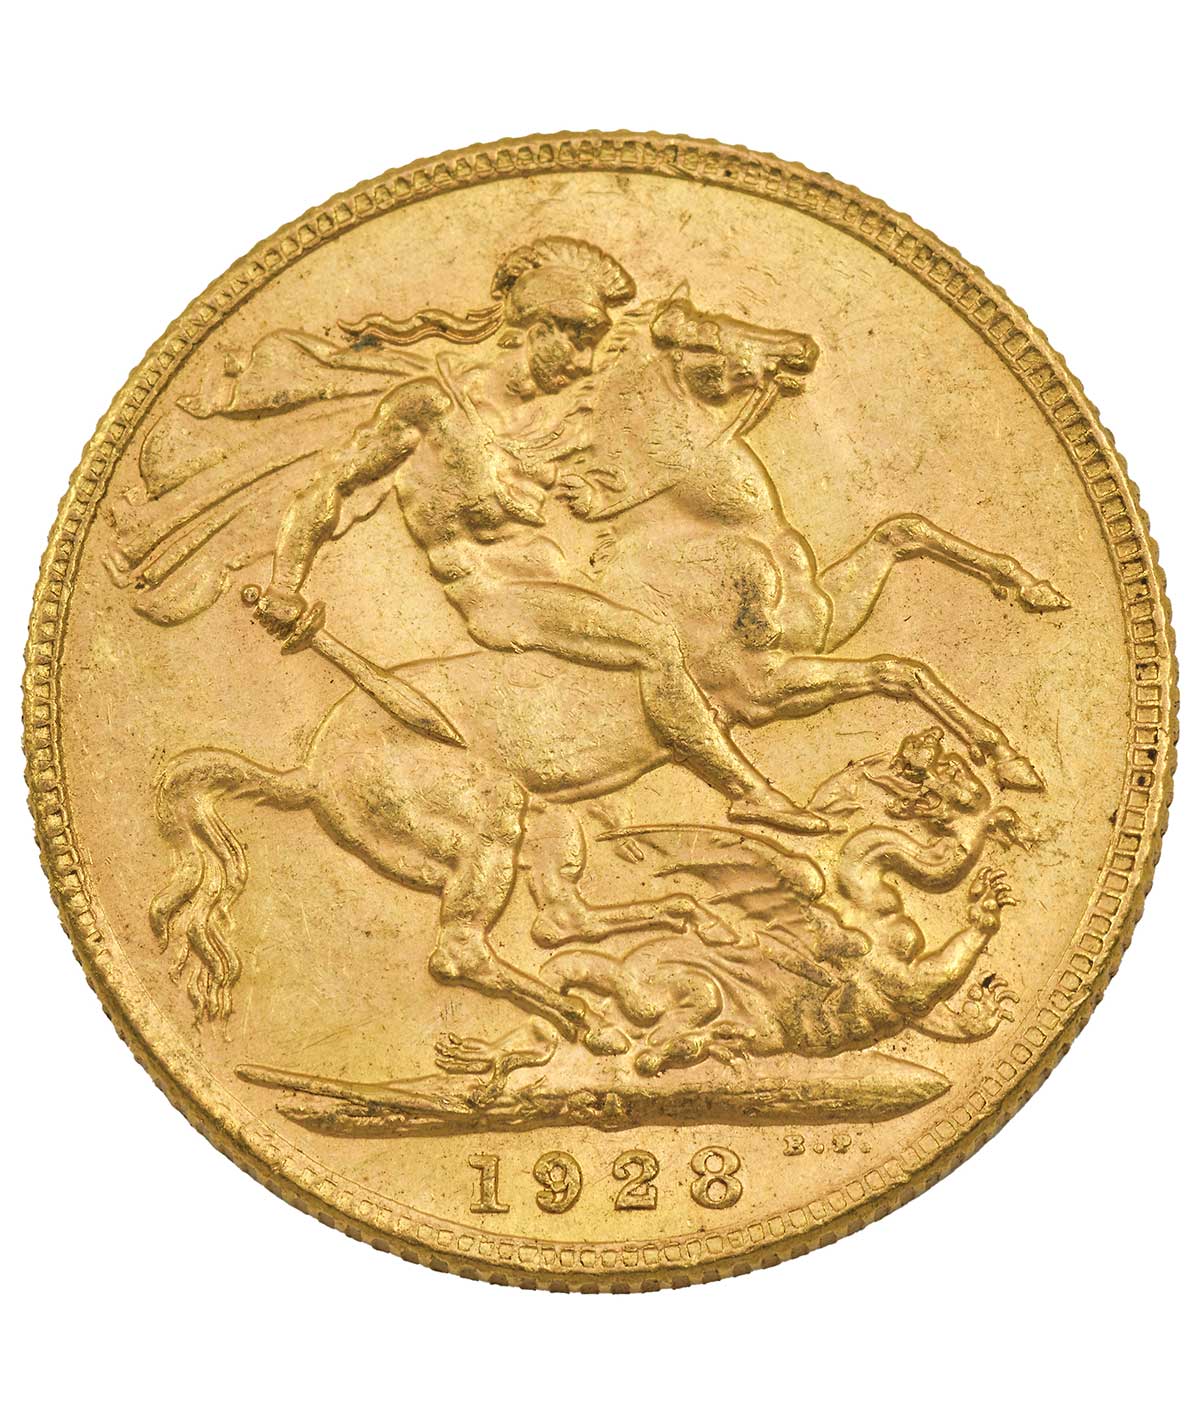 Vista frontal de la cruz de la moneda de oro Soberano de Jorge V de 1928